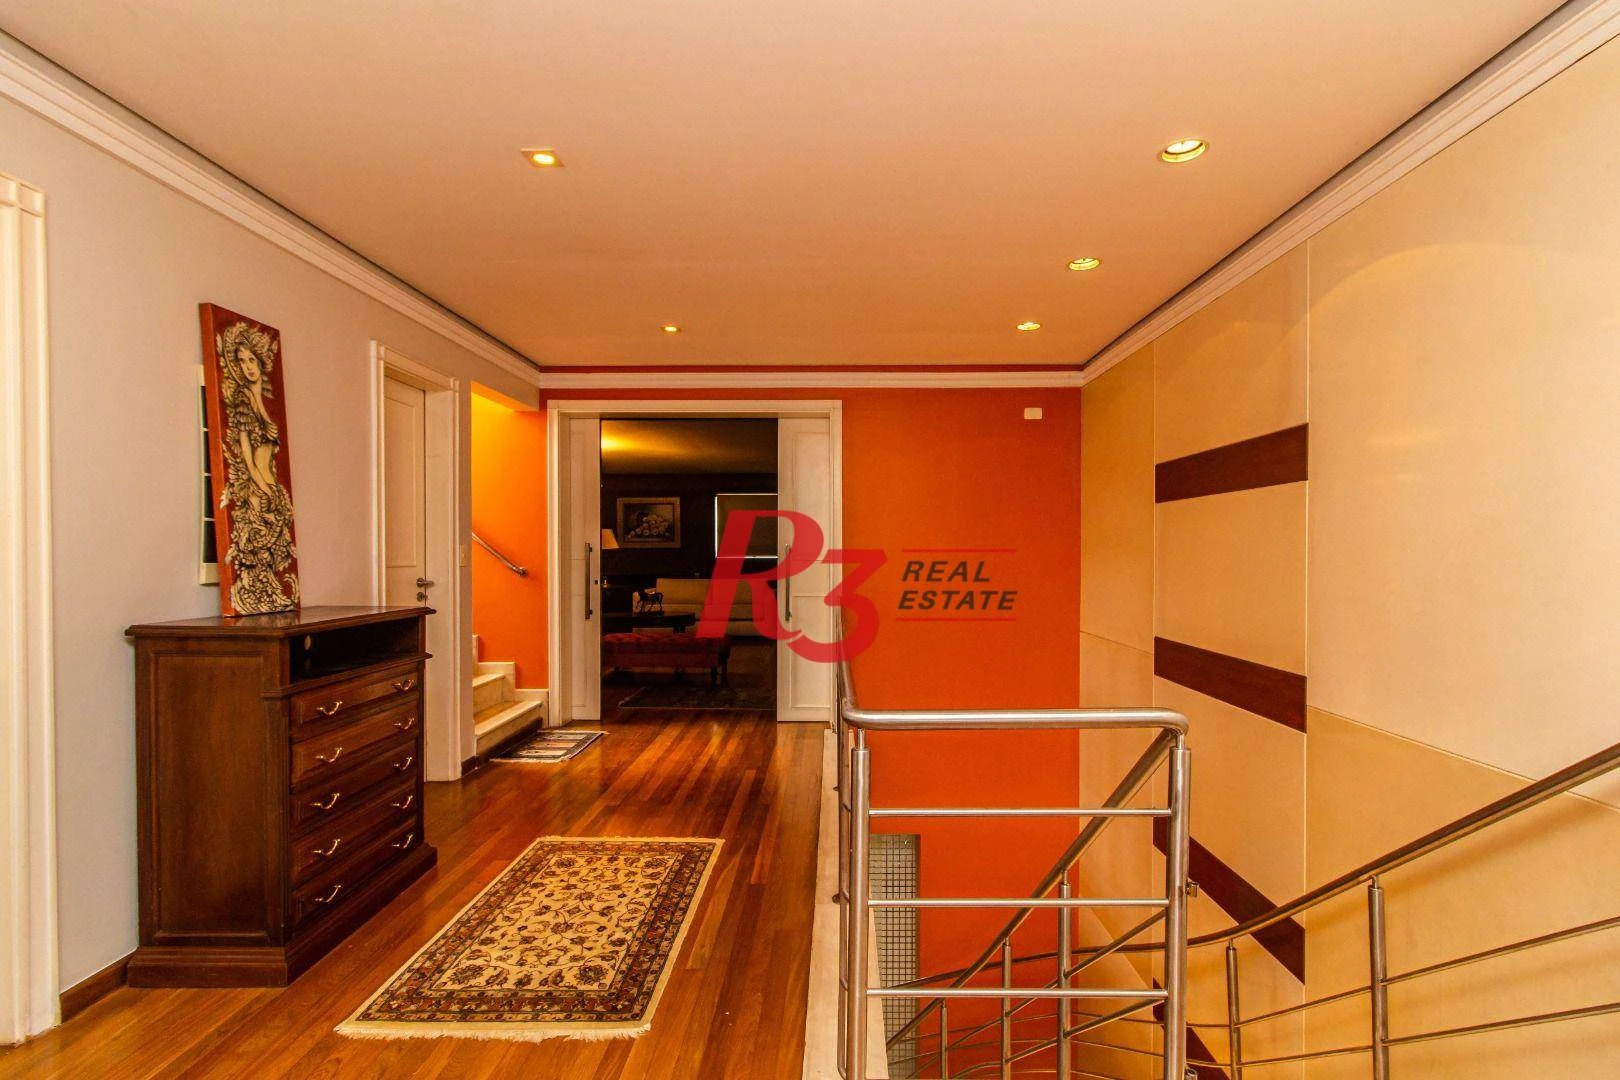 Cobertura para alugar, 600 m² por R$ 27.000,00/mês - Ponta da Praia - Santos/SP